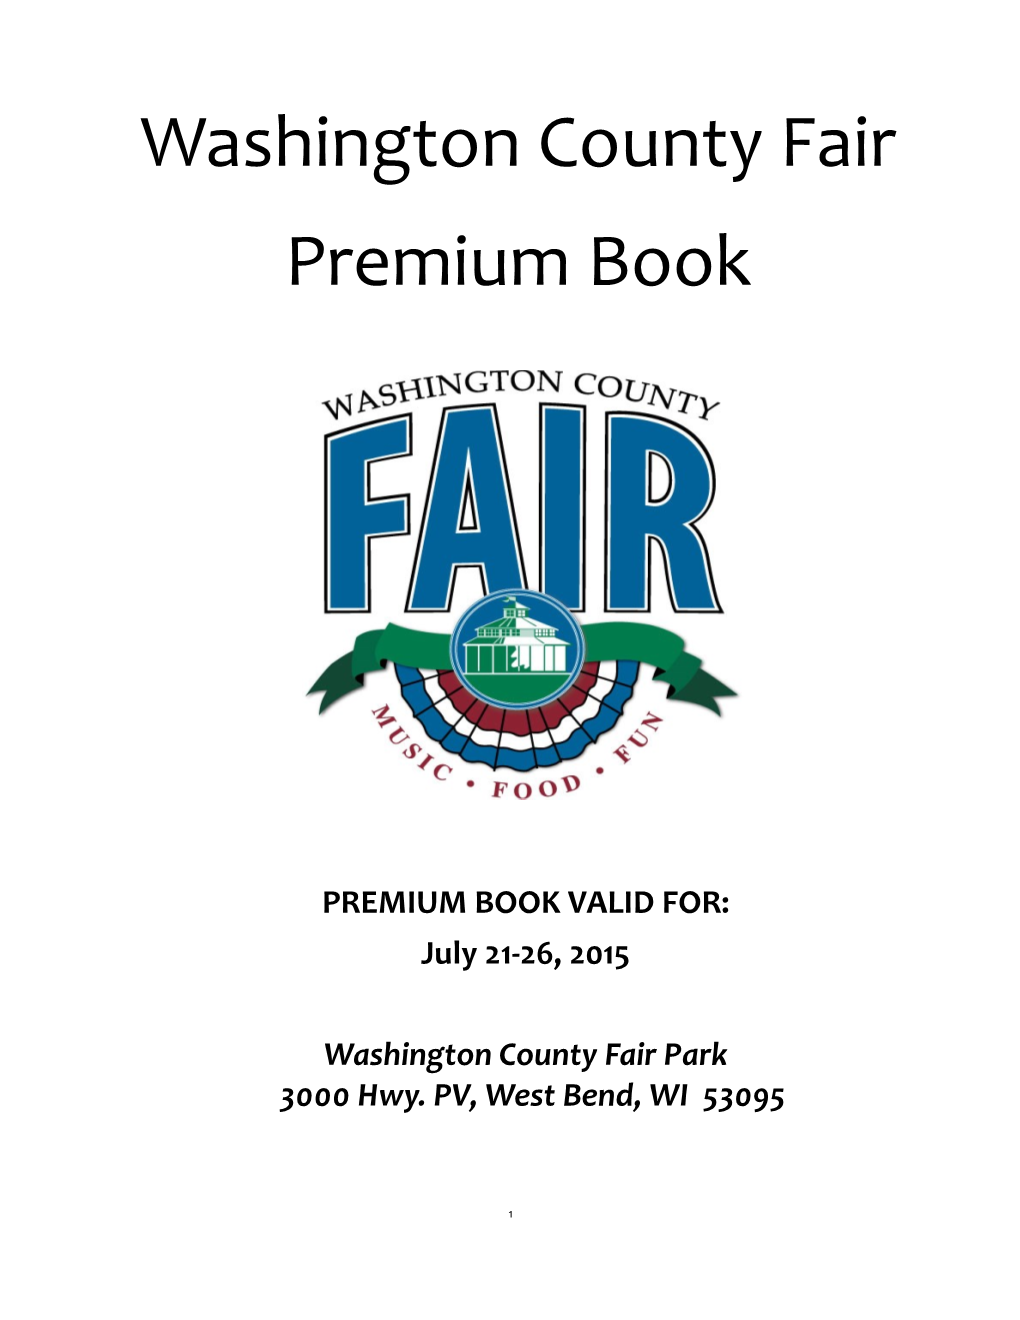 Washington County Fair Premium Book